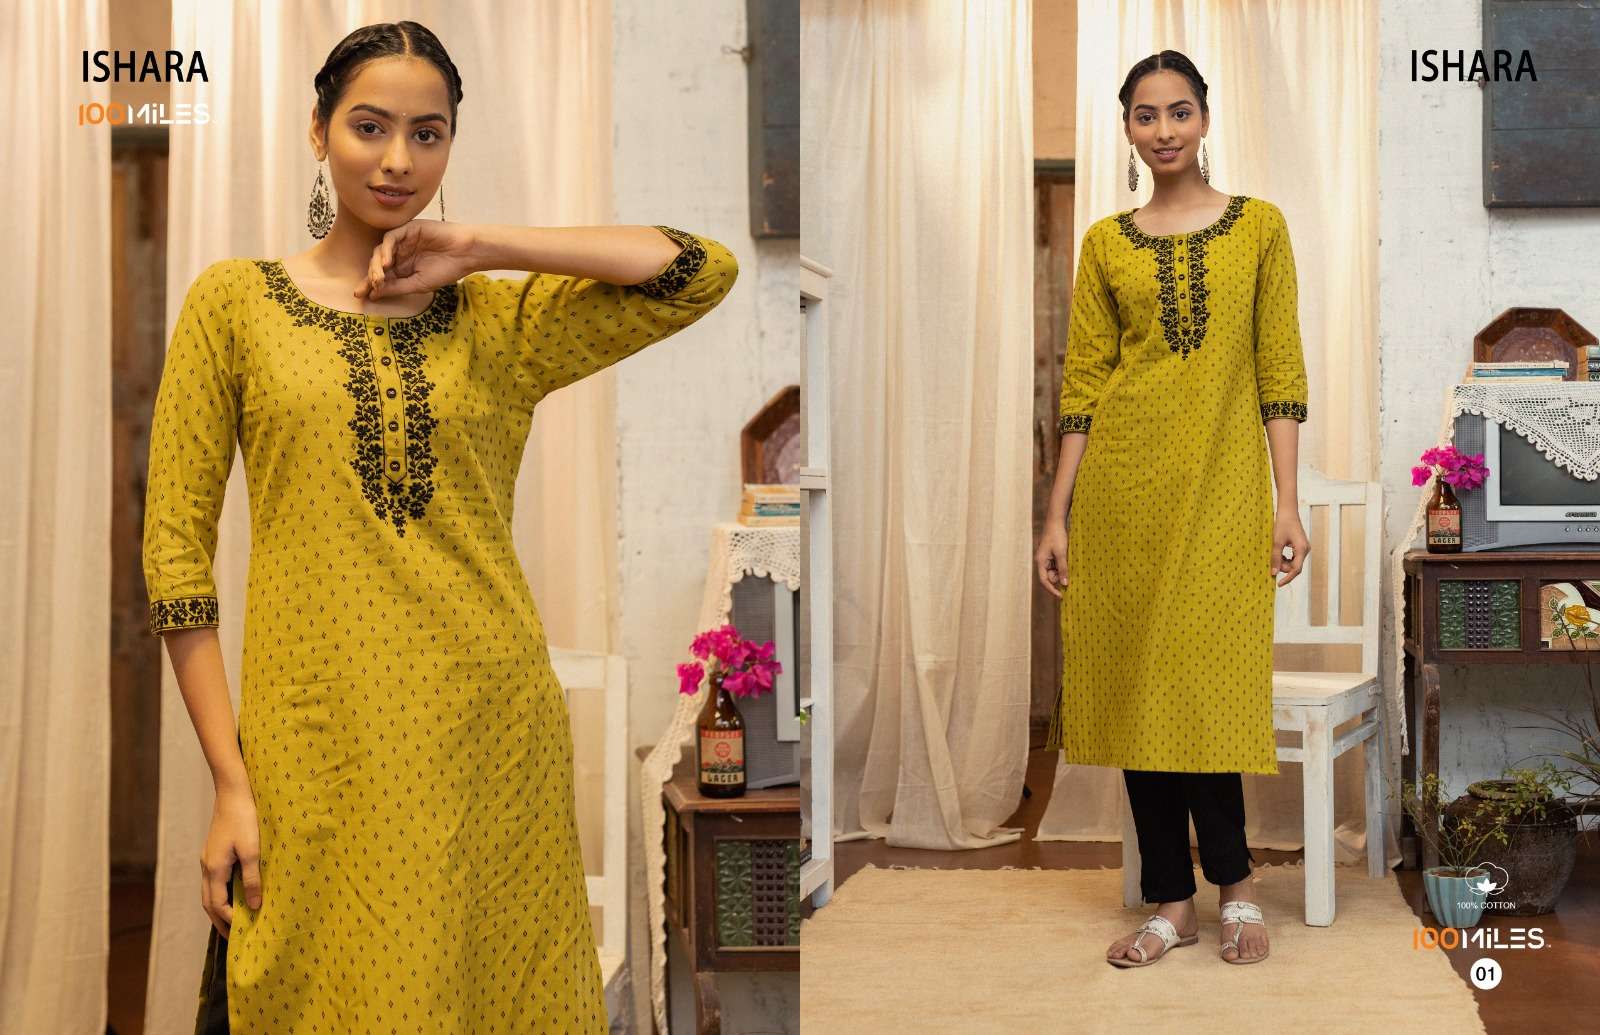 100 Miles Ishara Designer partyWear Kurti Set Wholesaler Surat Gujarat